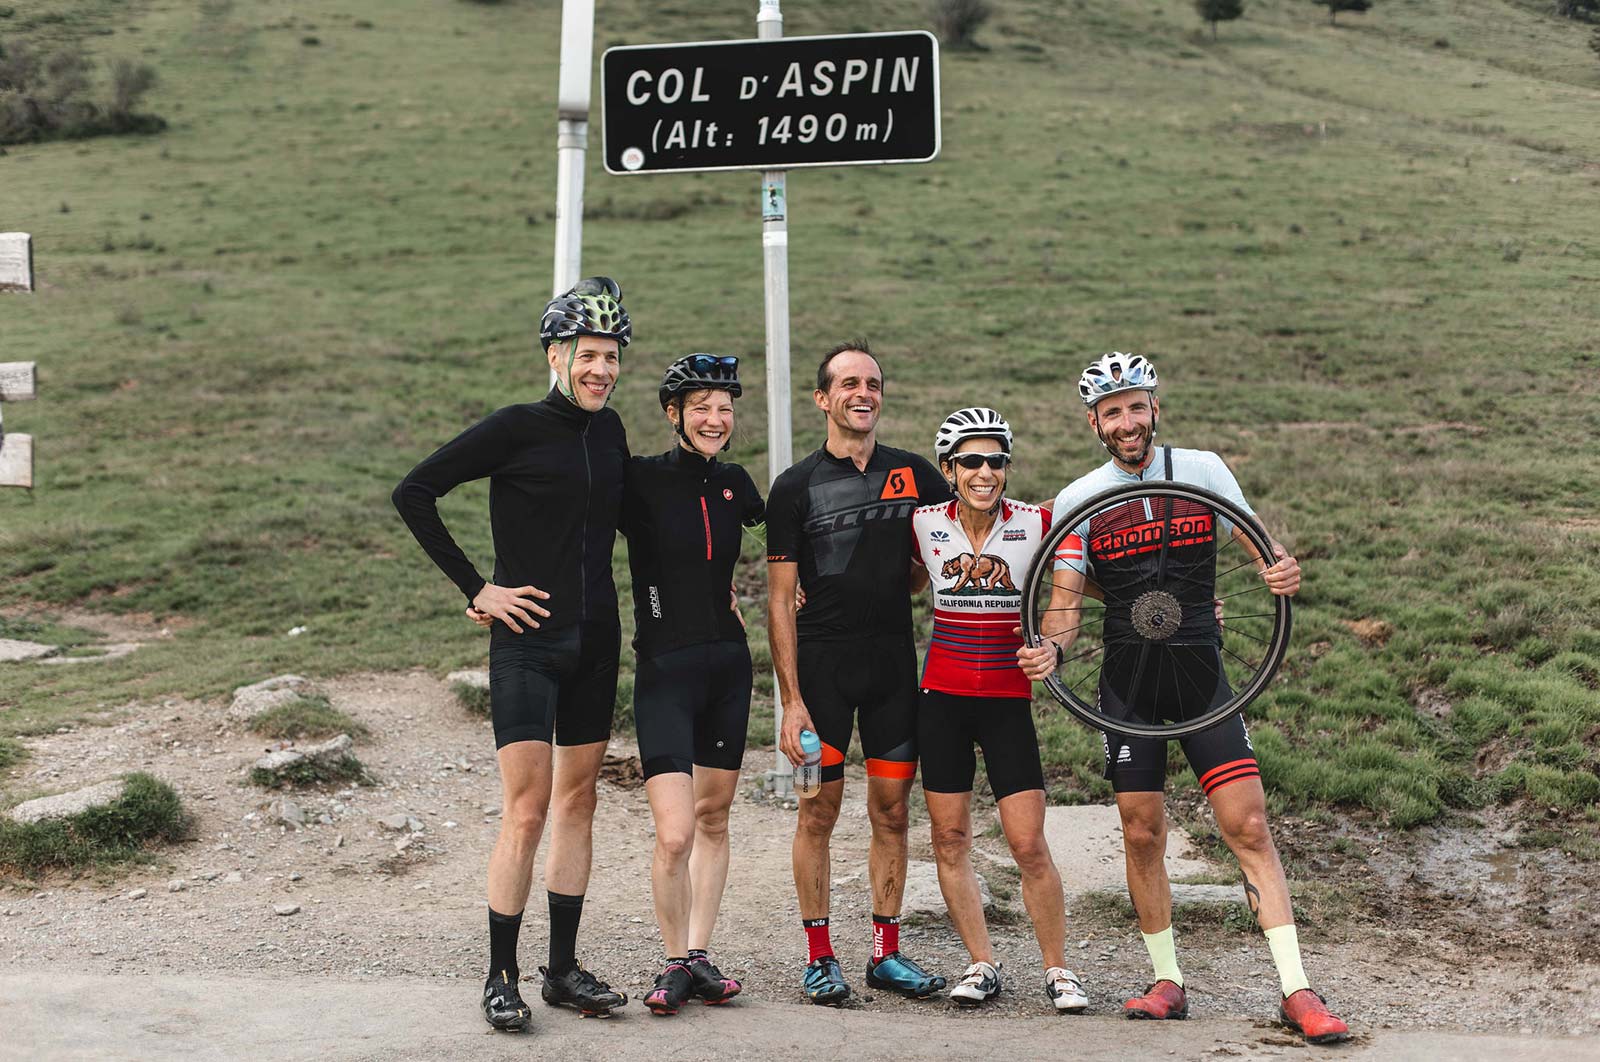 2019 Tour de France - Col d'Aspin